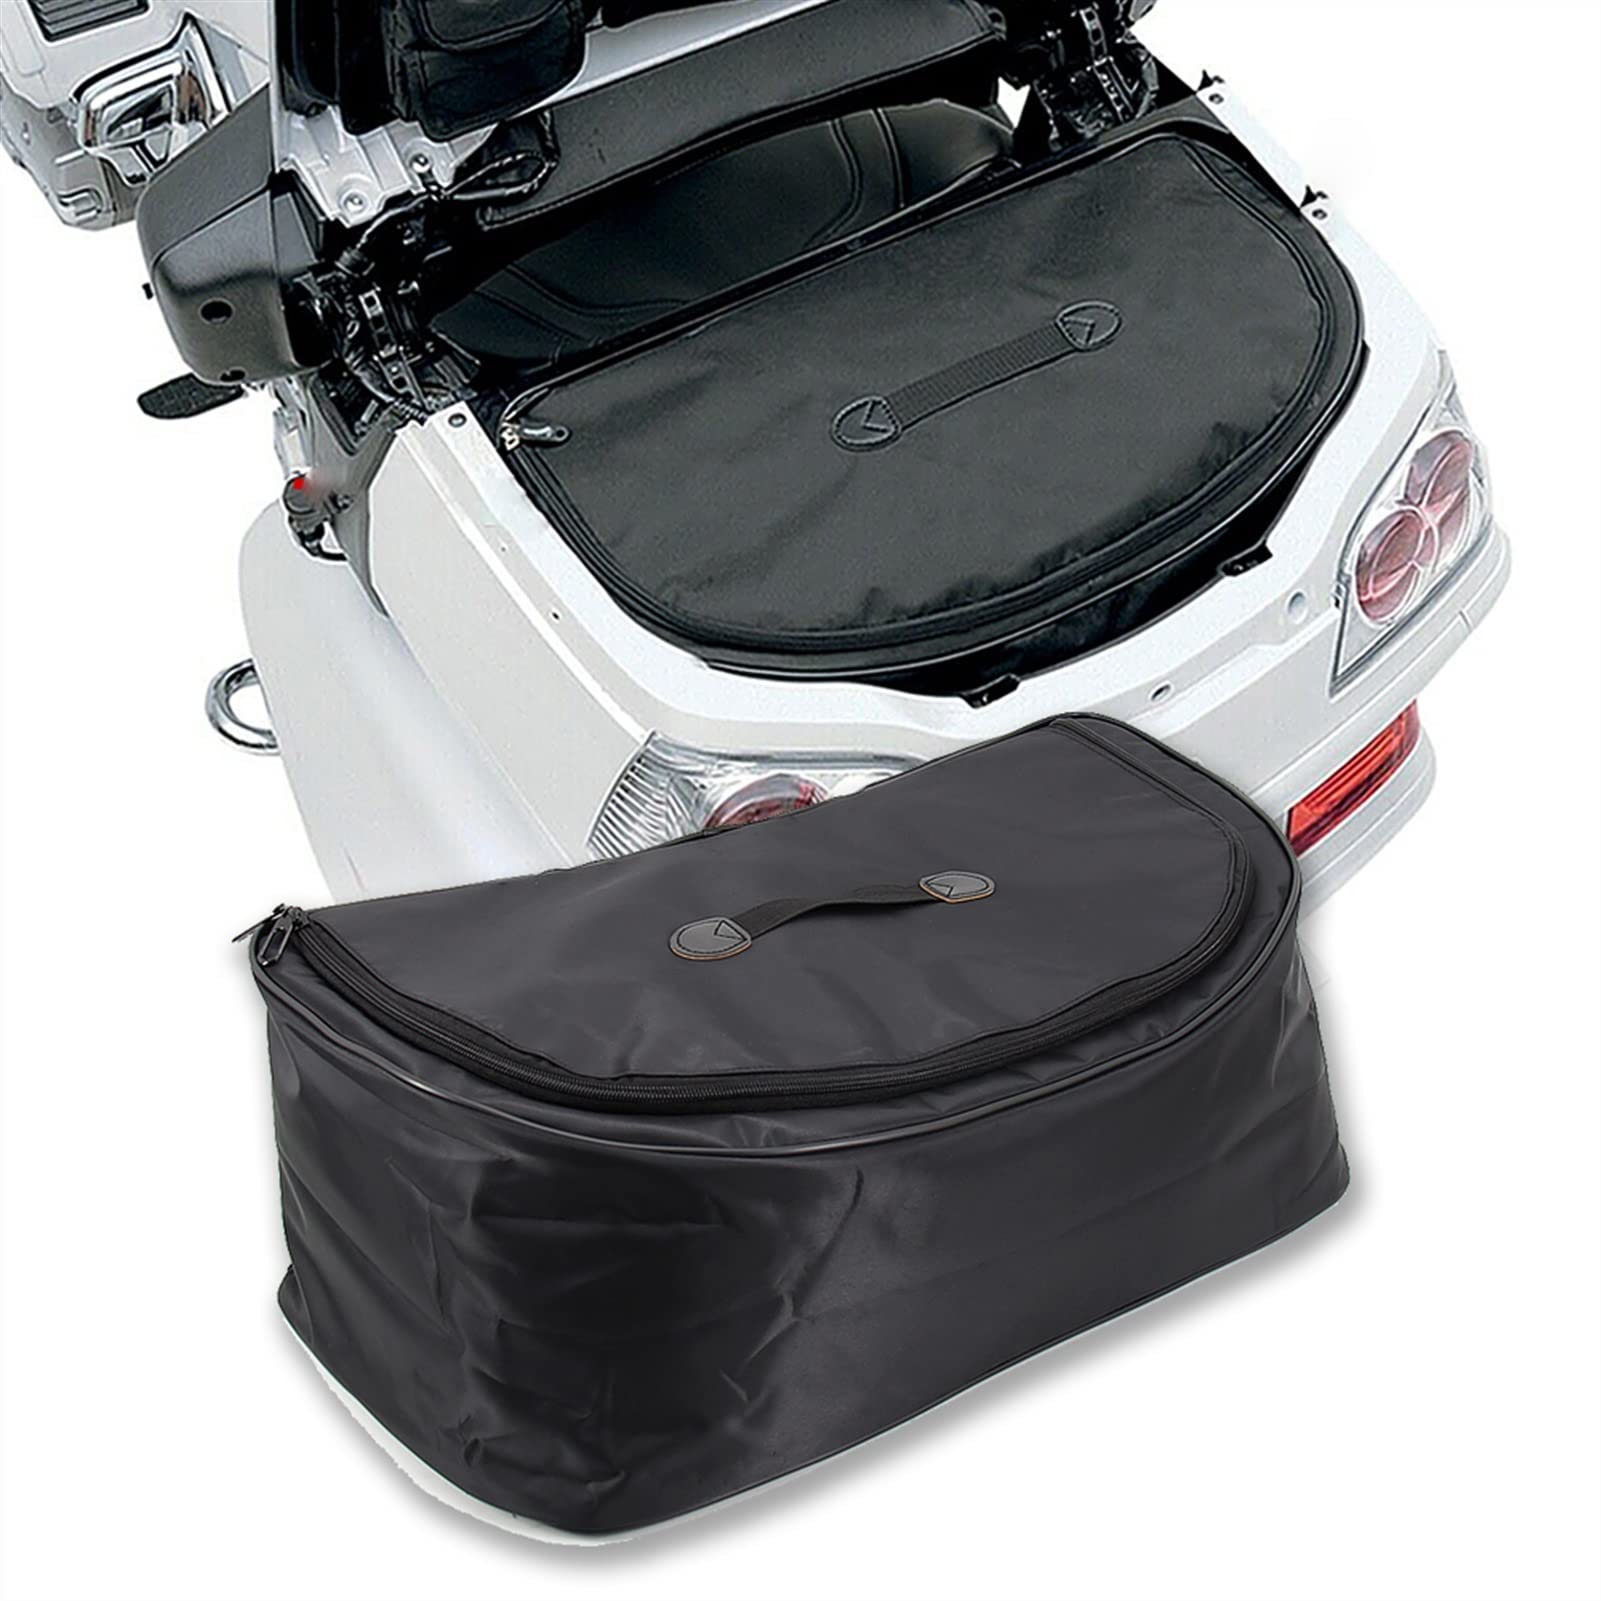 2001-2009 2010 Motorrad Für Honda Goldwing GL 1800 Kofferraumauskleidung Tasche Aufbewahrung Gepäck Seitenbox Innentasche Reisetasche Schmücken von XQSSB